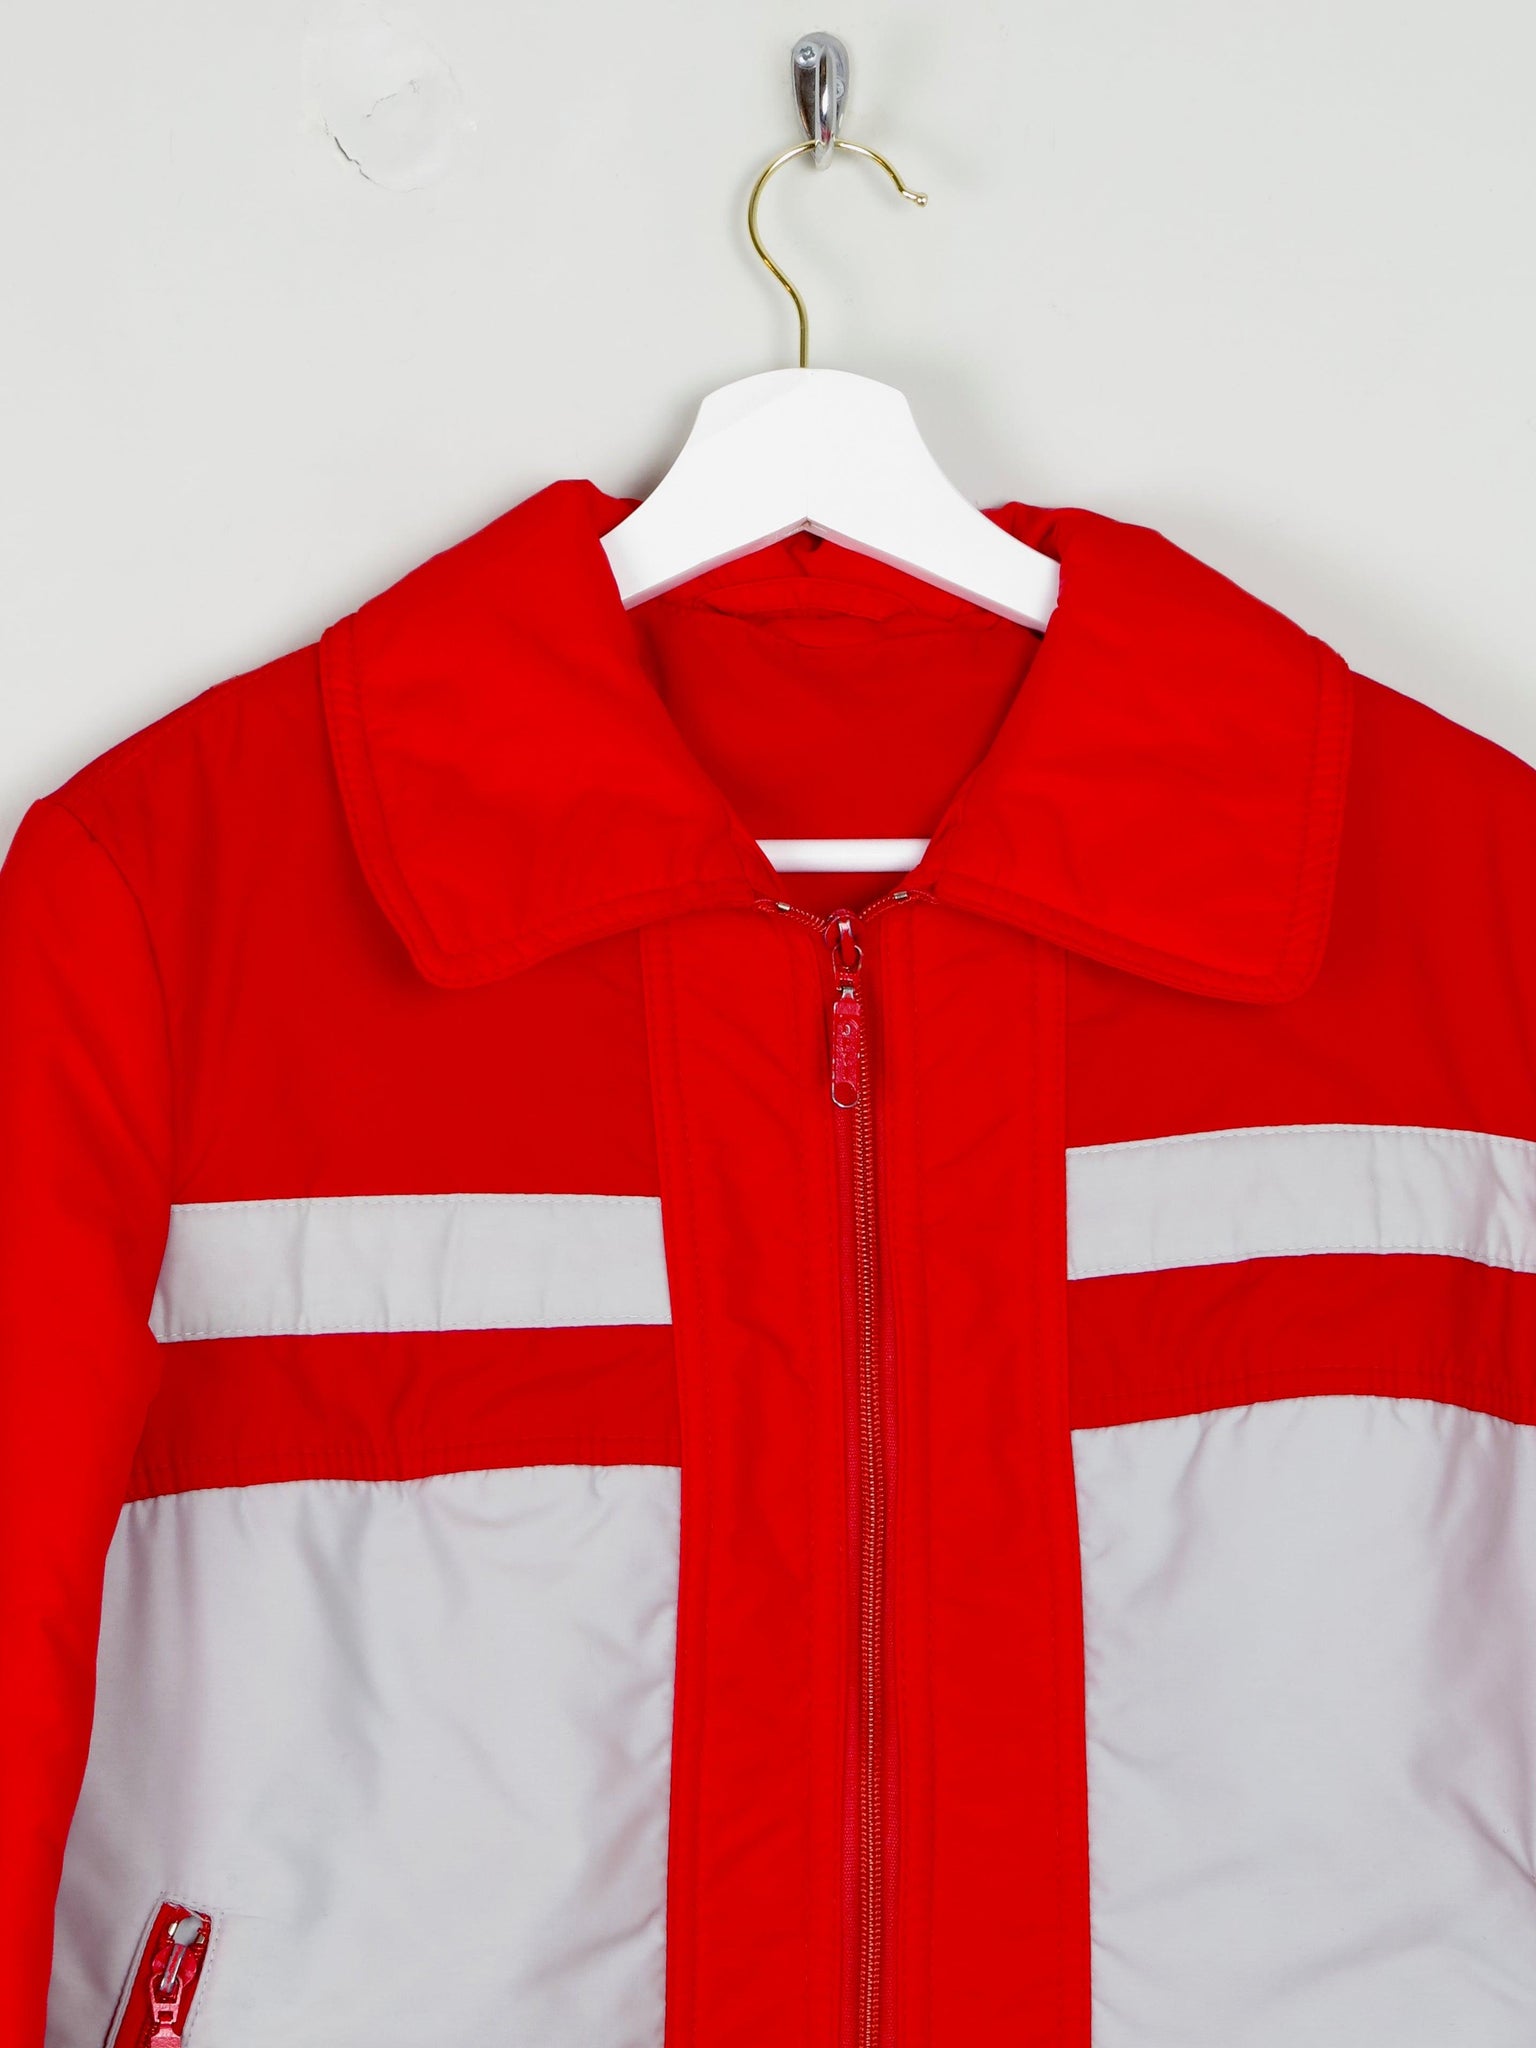 Women's Red & Grey Vintage Ski Jacket S - The Harlequin